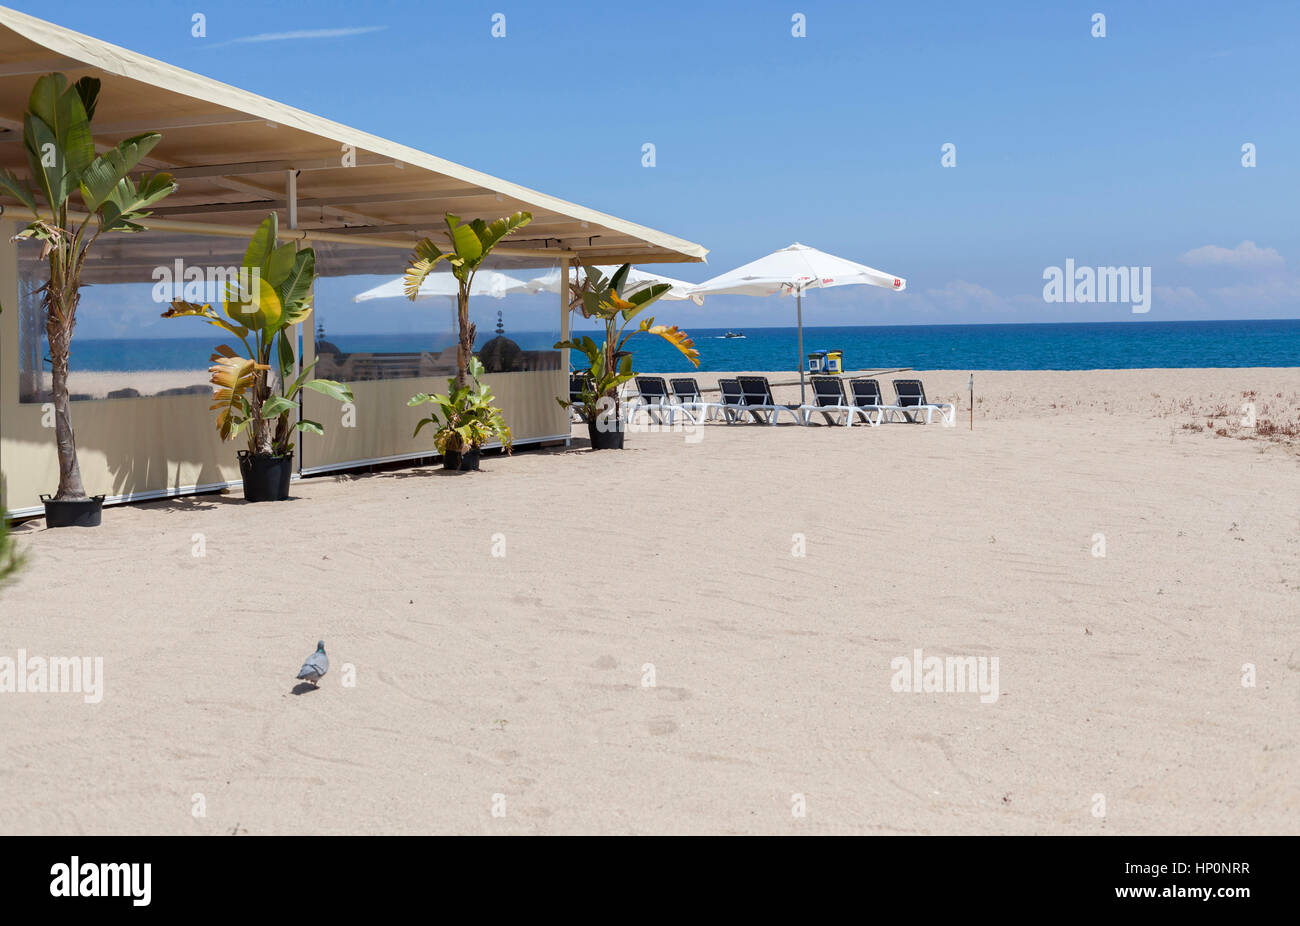 ARENYS DE MAR, Spagna-maggio 31,2016: spiaggia mediterranea di Arenys de Mar, bar terrazza con ombrellone e lettini, Maresme, provincia di Barcellona, in Catalogna. Foto Stock